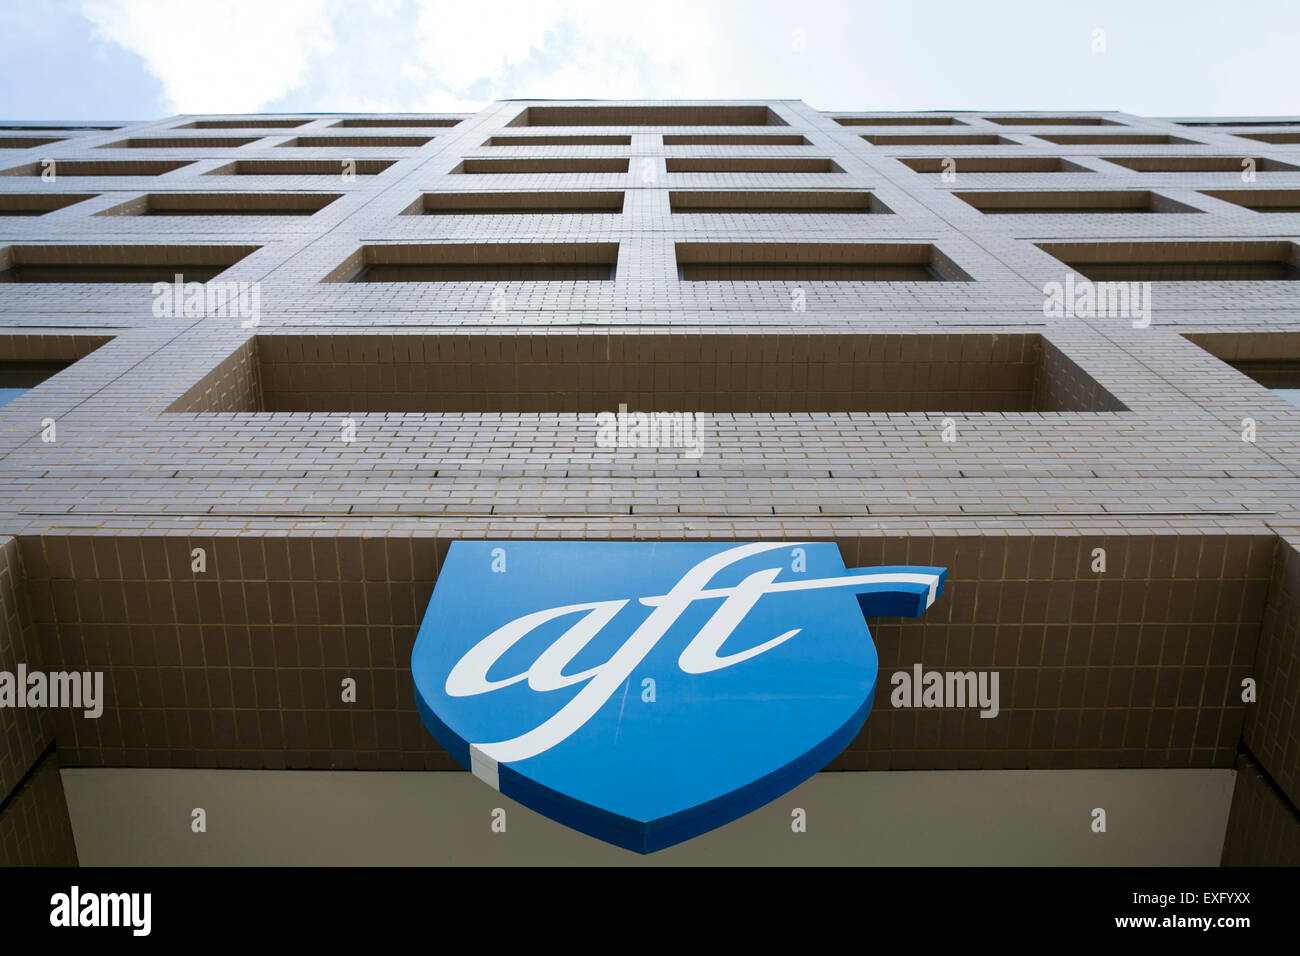 Ein Logo Zeichen außerhalb der Hauptsitz der amerikanischen Vereinigung der Lehrer (AFT) in Washington, D.C. am 12. Juli 2015. Stockfoto